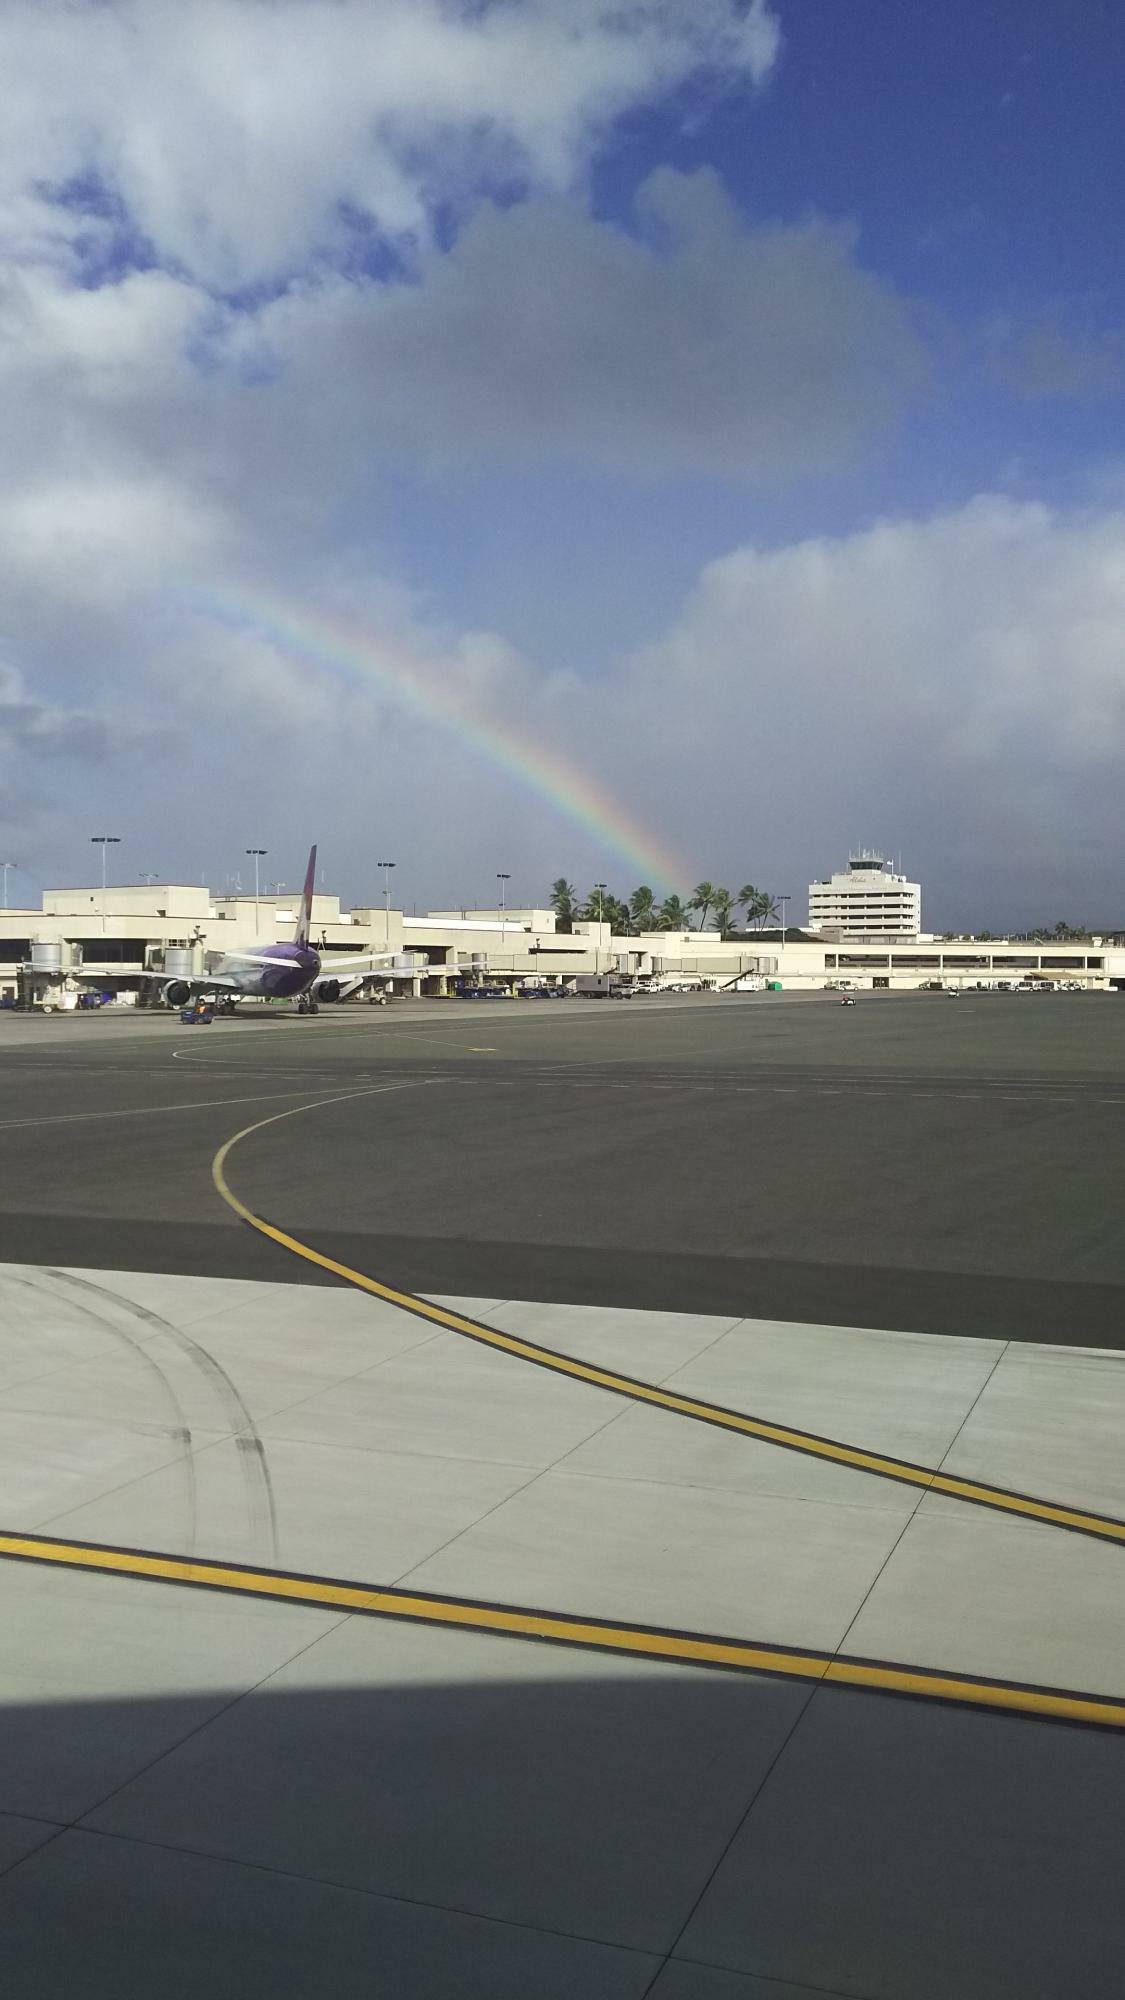 太平洋上に浮かぶ島々で構成されるハワイは雨が多い反面、虹もよく発生することからレインボー・ステイト（虹の州）とも呼称される。幸運の象徴として重宝され、現地の車のナンバープレートにも描かれている。